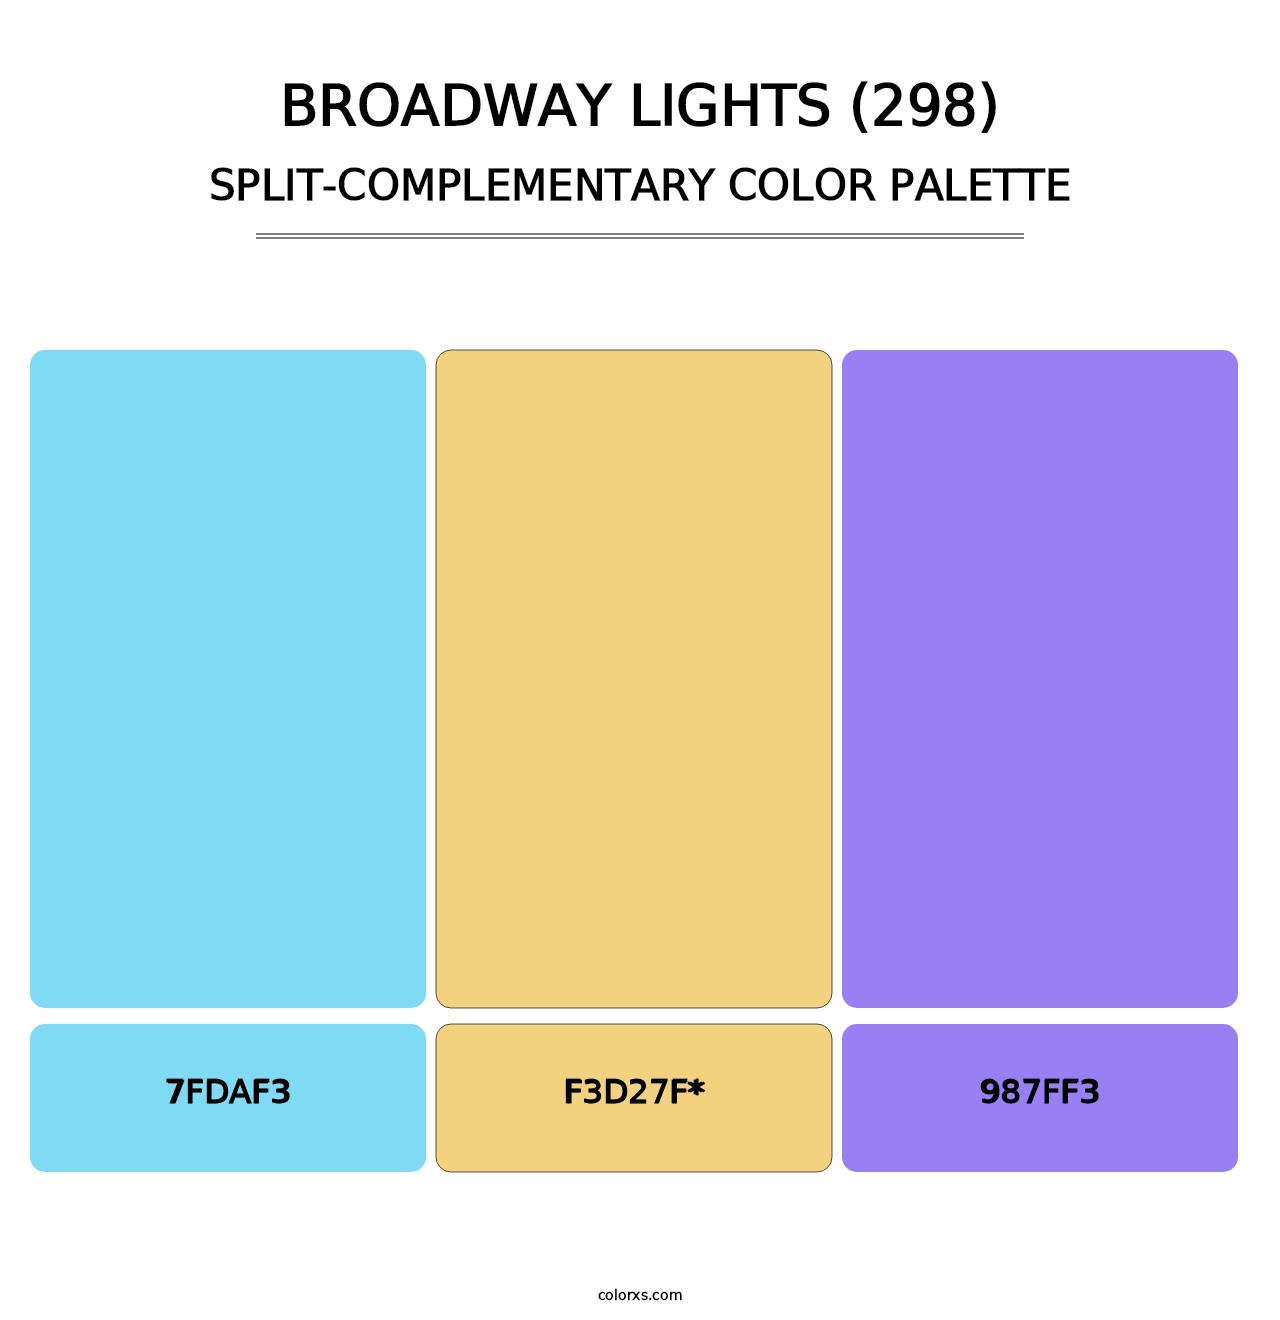 Broadway Lights (298) - Split-Complementary Color Palette